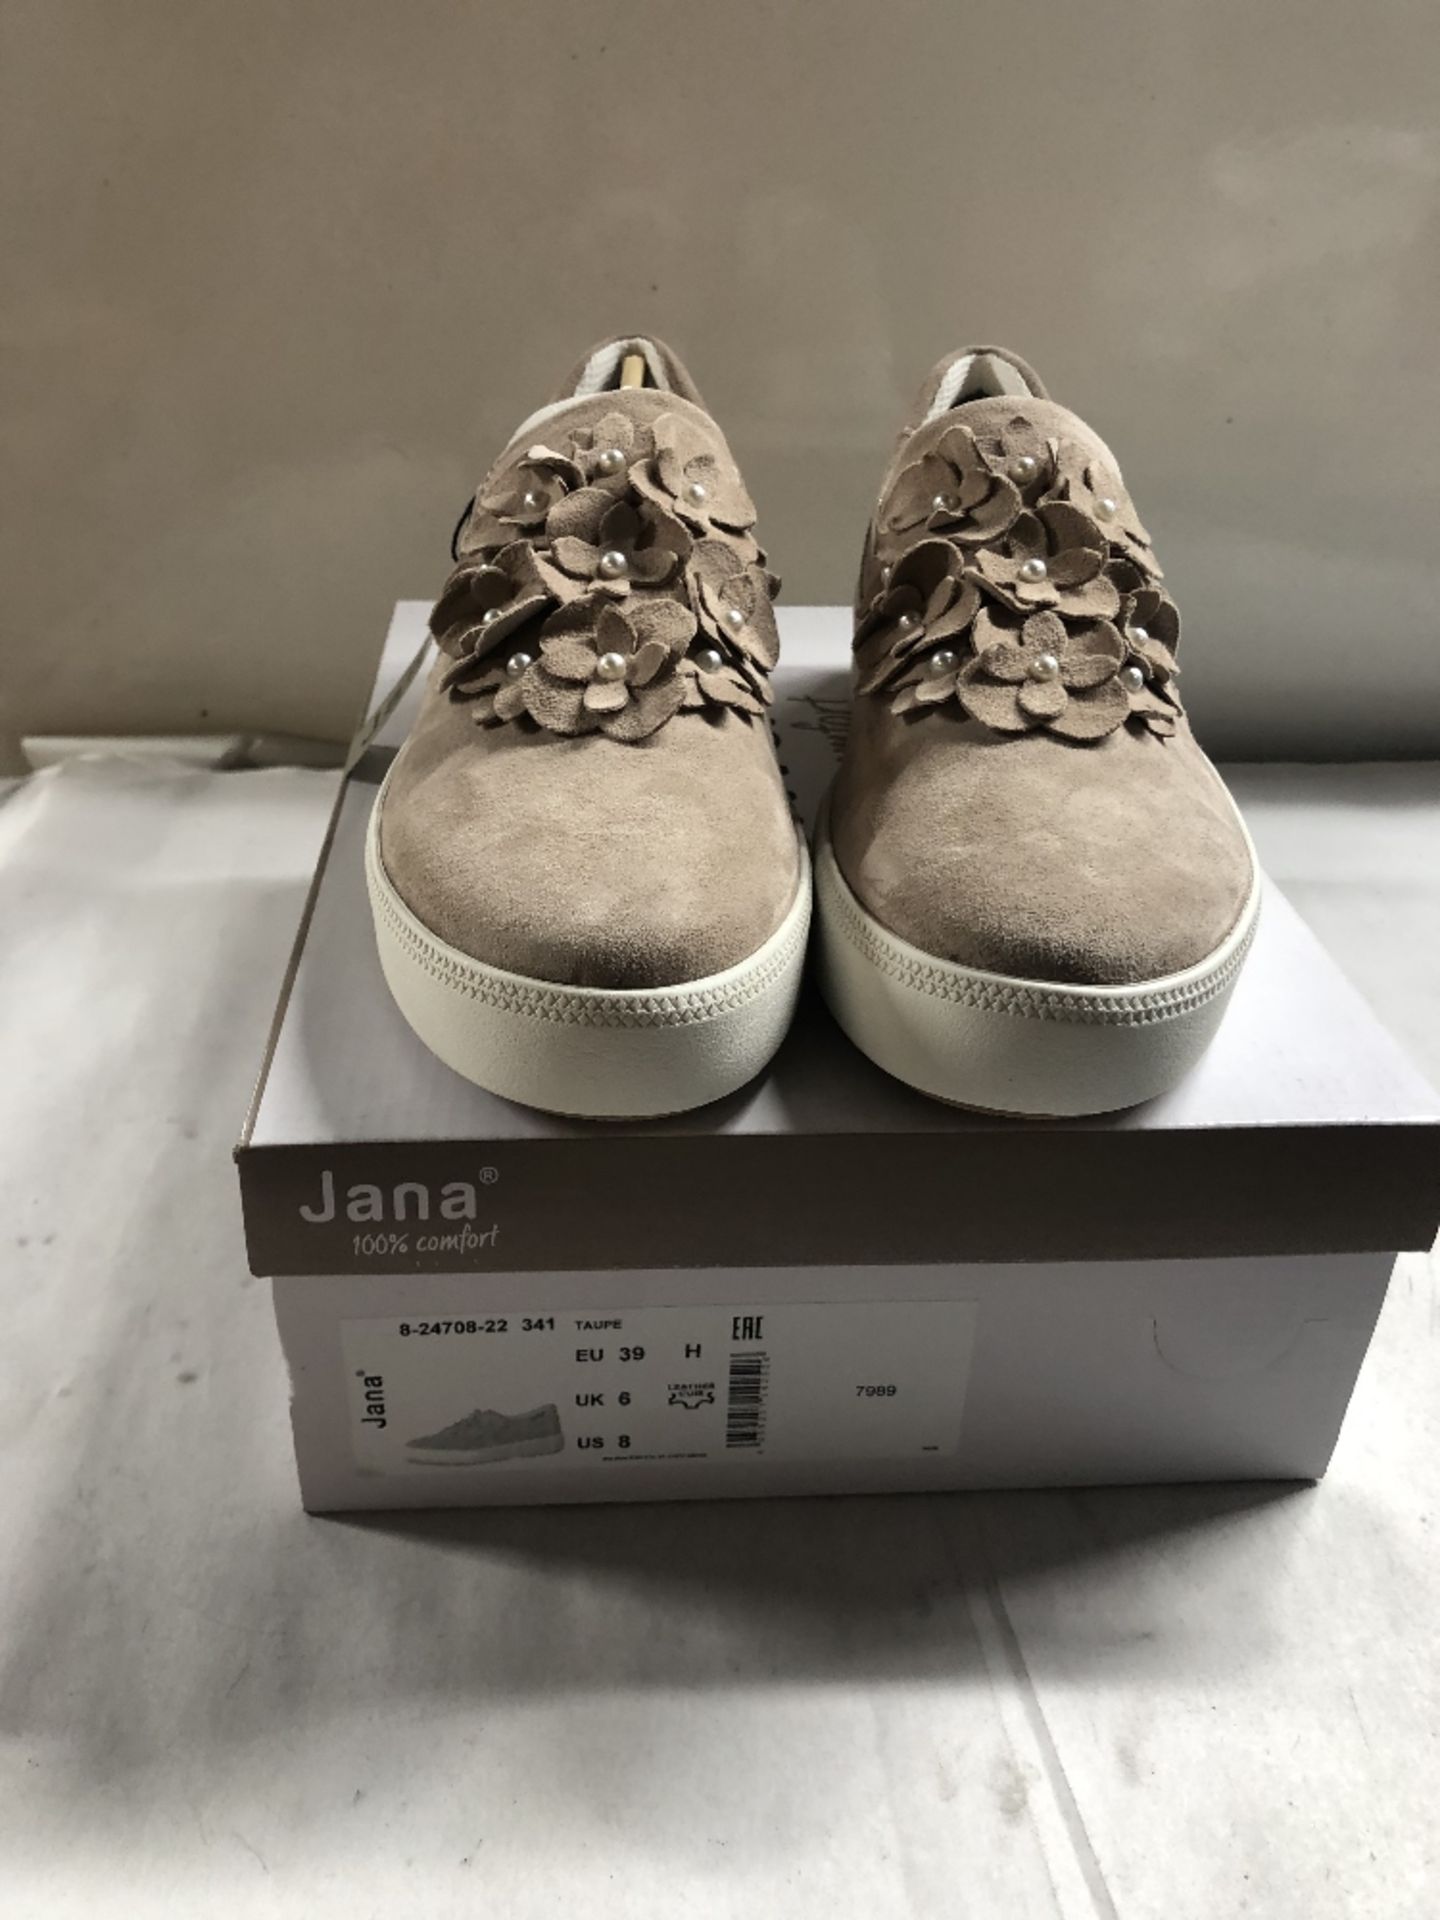 Jana Canvas Shoes. UK 6